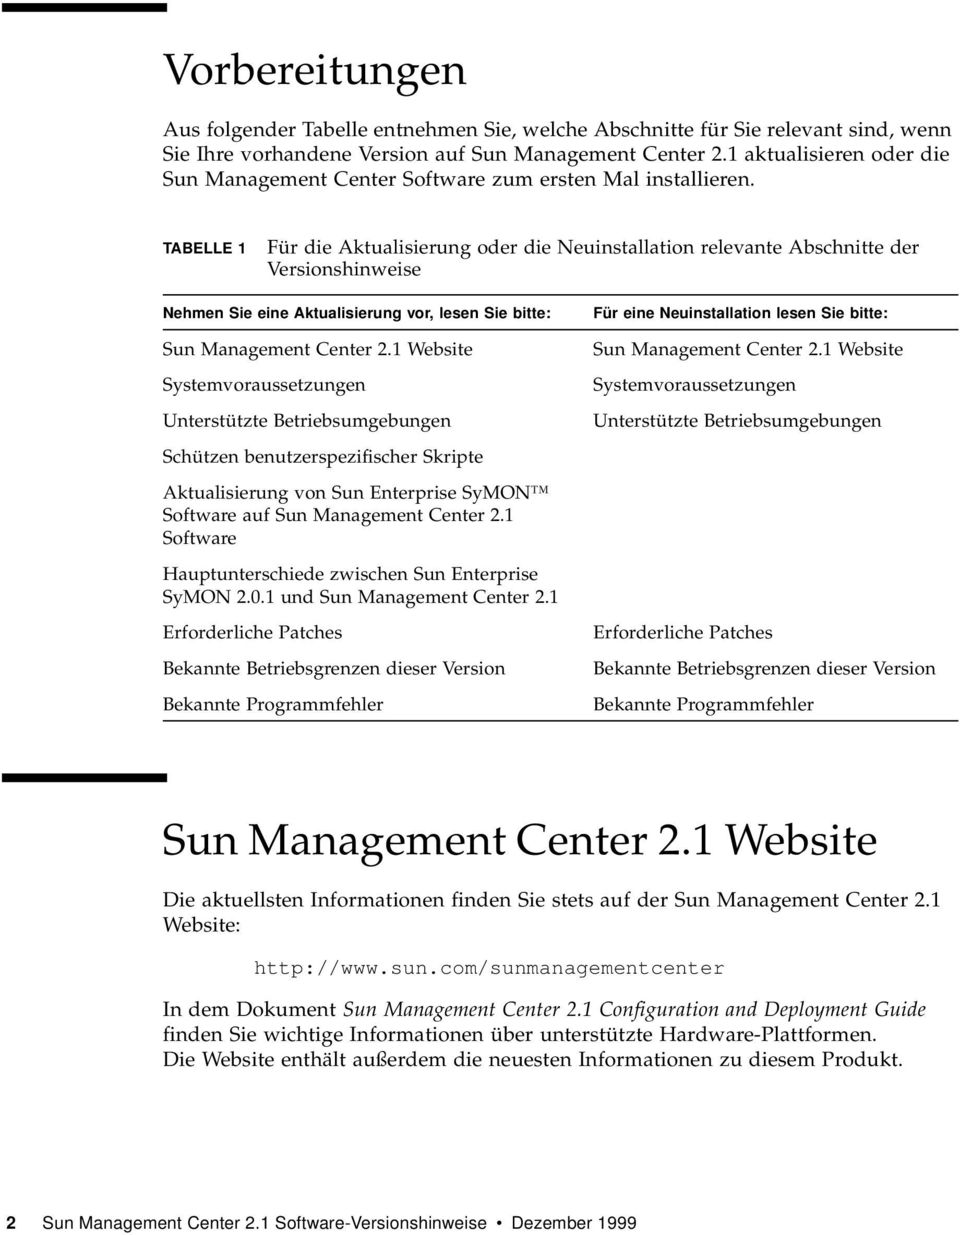 TABELLE 1 Für die Aktualisierung oder die Neuinstallation relevante Abschnitte der Versionshinweise Nehmen Sie eine Aktualisierung vor, lesen Sie bitte: Sun Management Center 2.